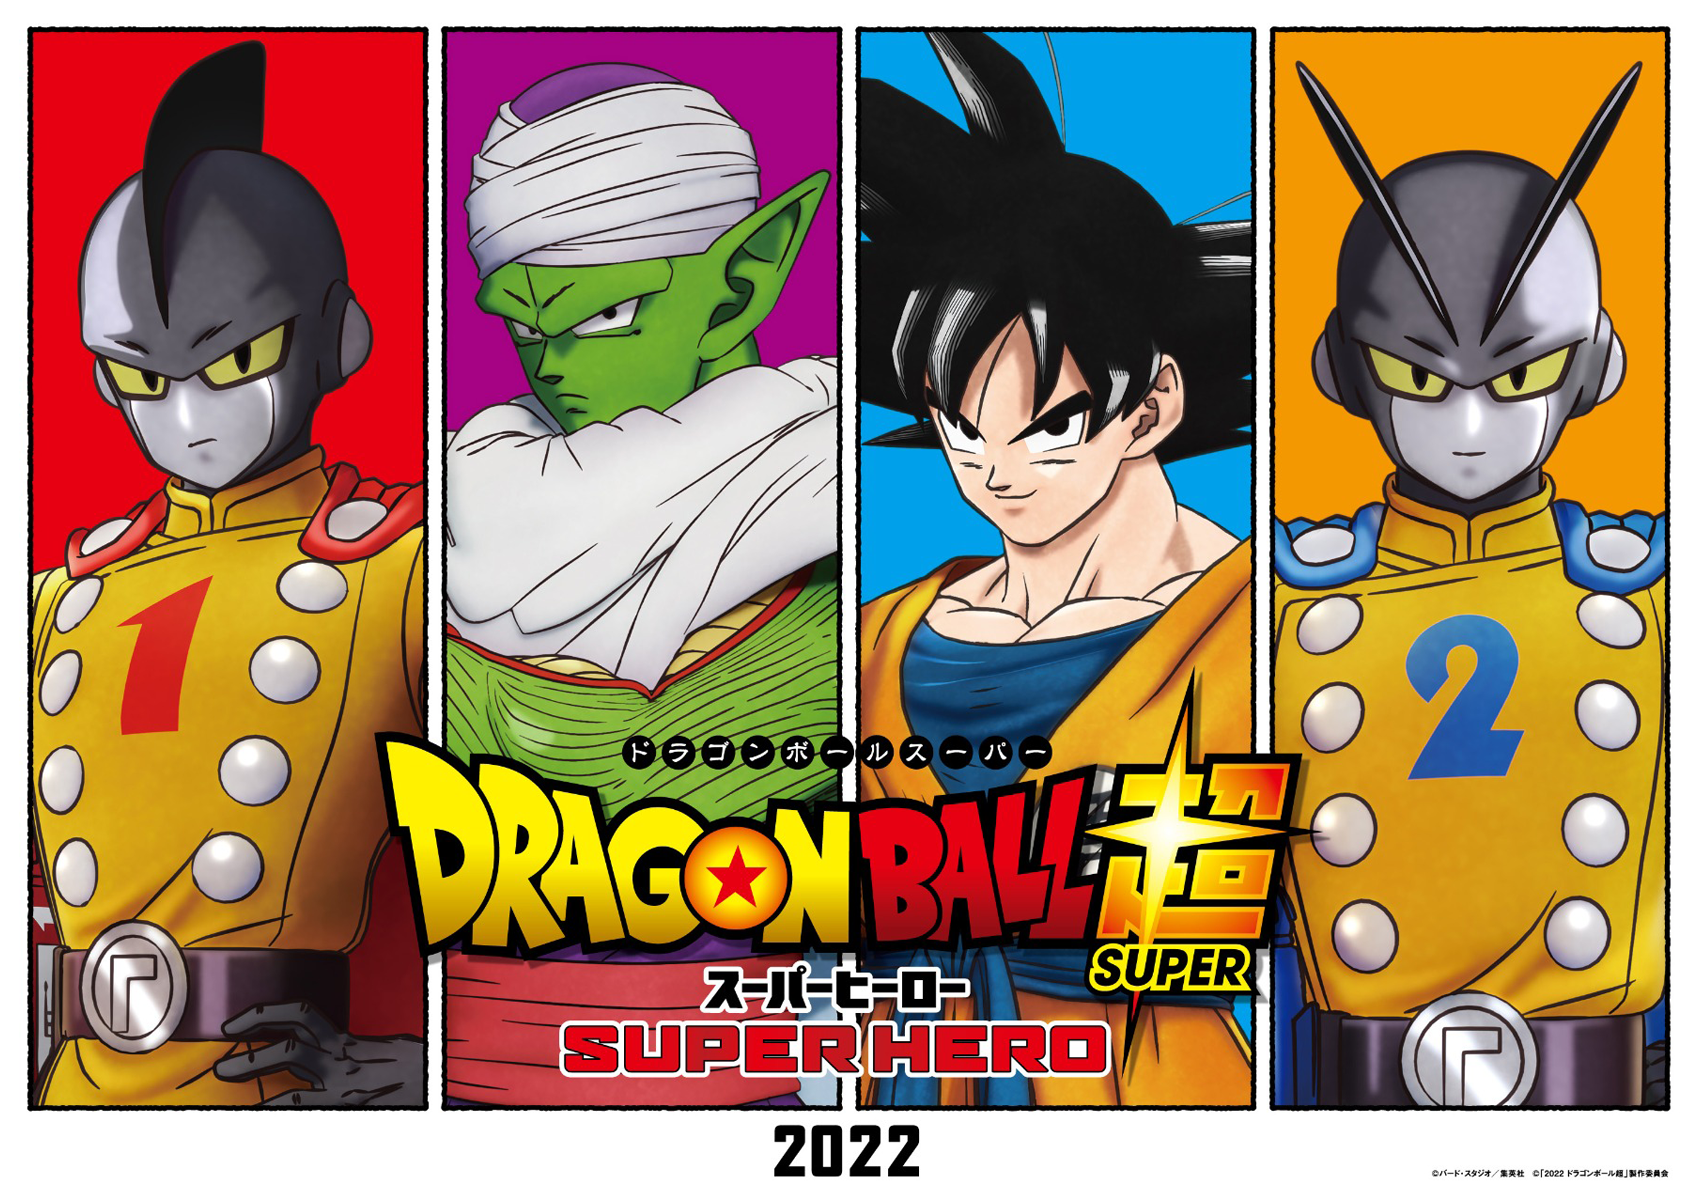 Movie Guide  2022 Theatrical Film - Dragon Ball Super: Super Hero